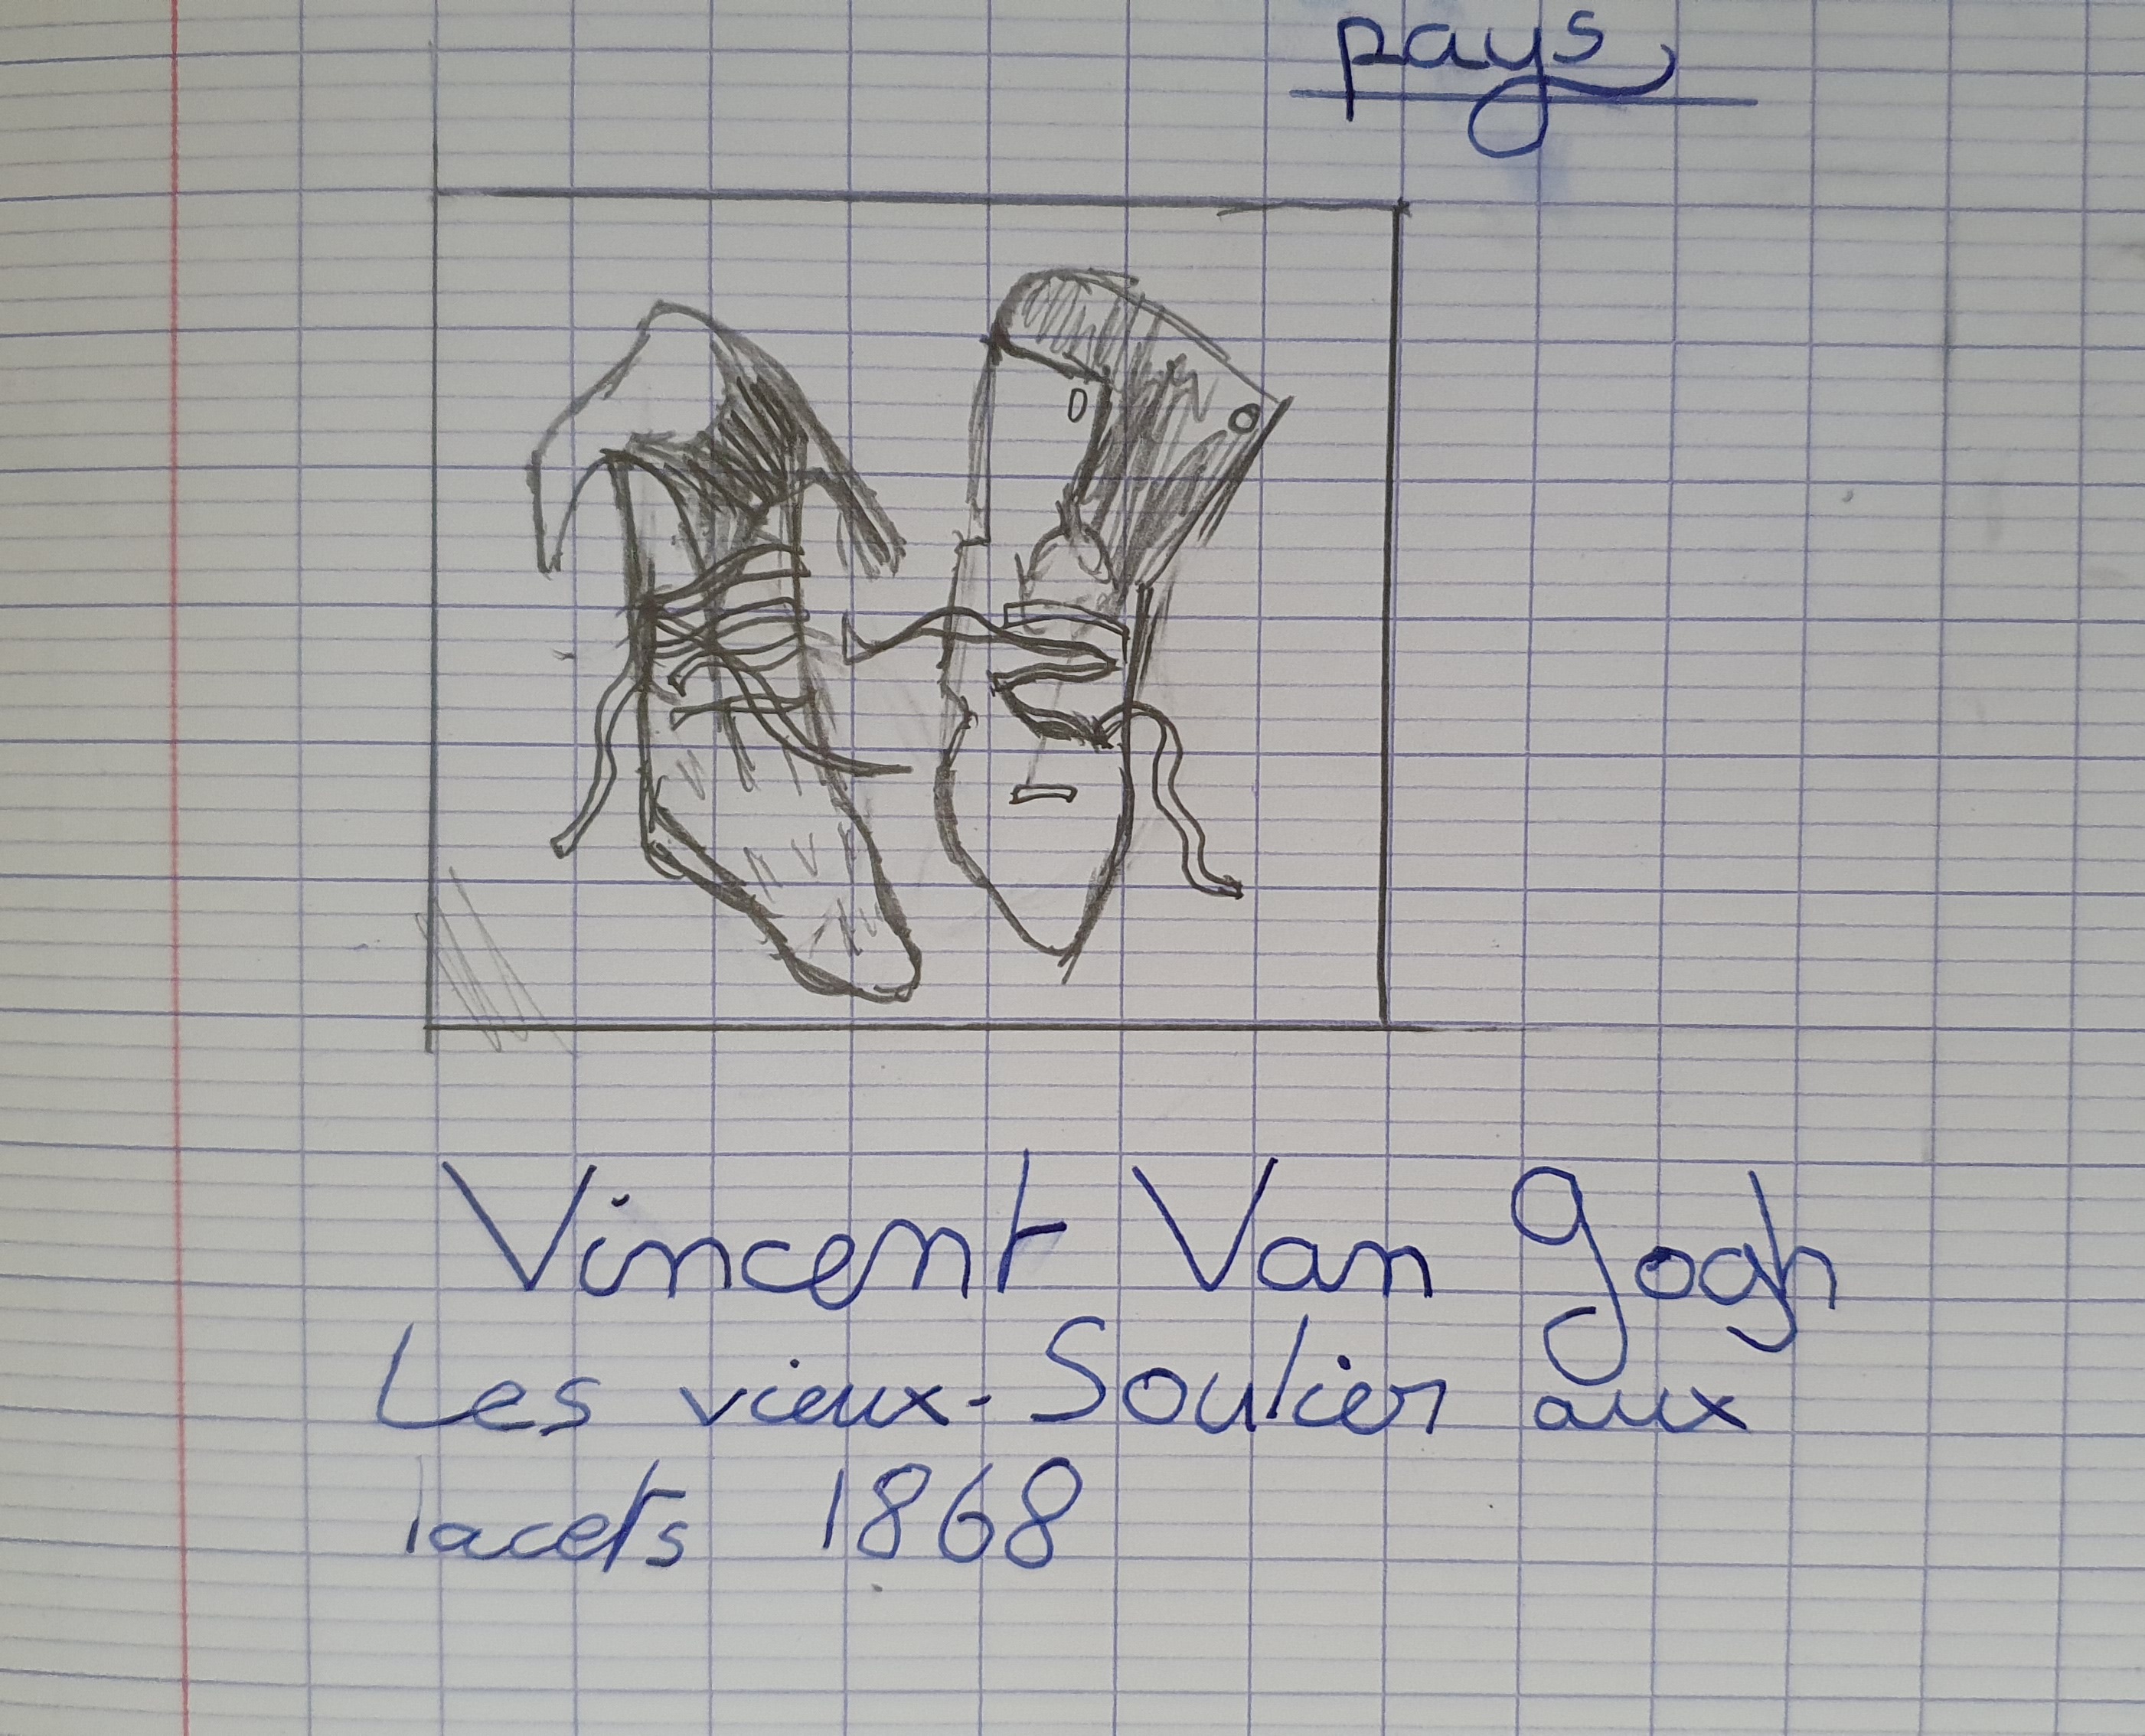 Les vieux souliers de Vincent Van Gogh, croquis d'élève